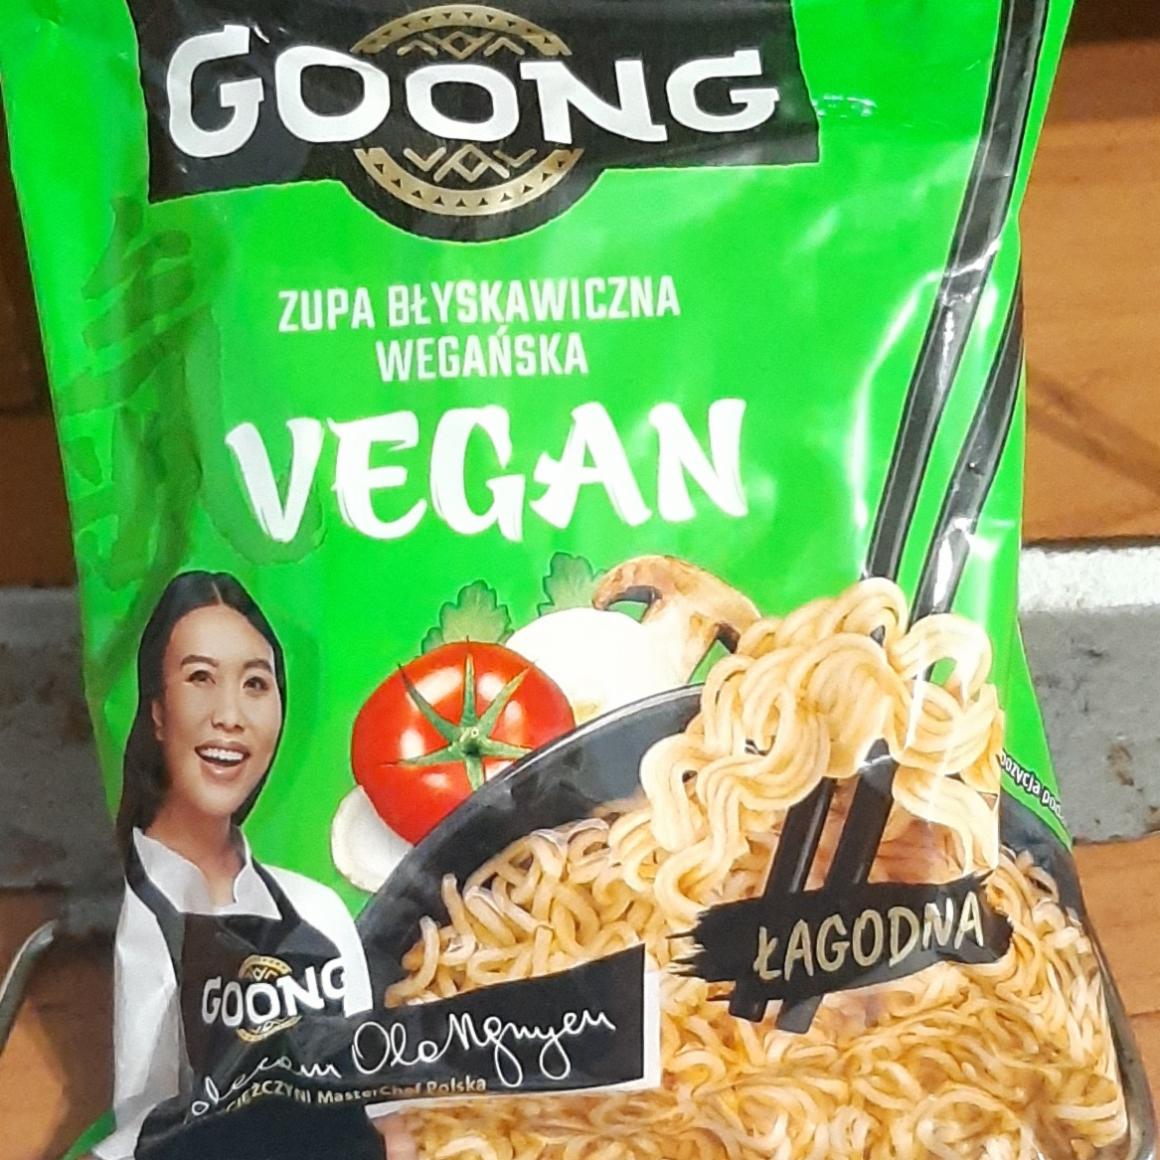 Фото - Zupa błyskawiczna wegańska vegan Goong